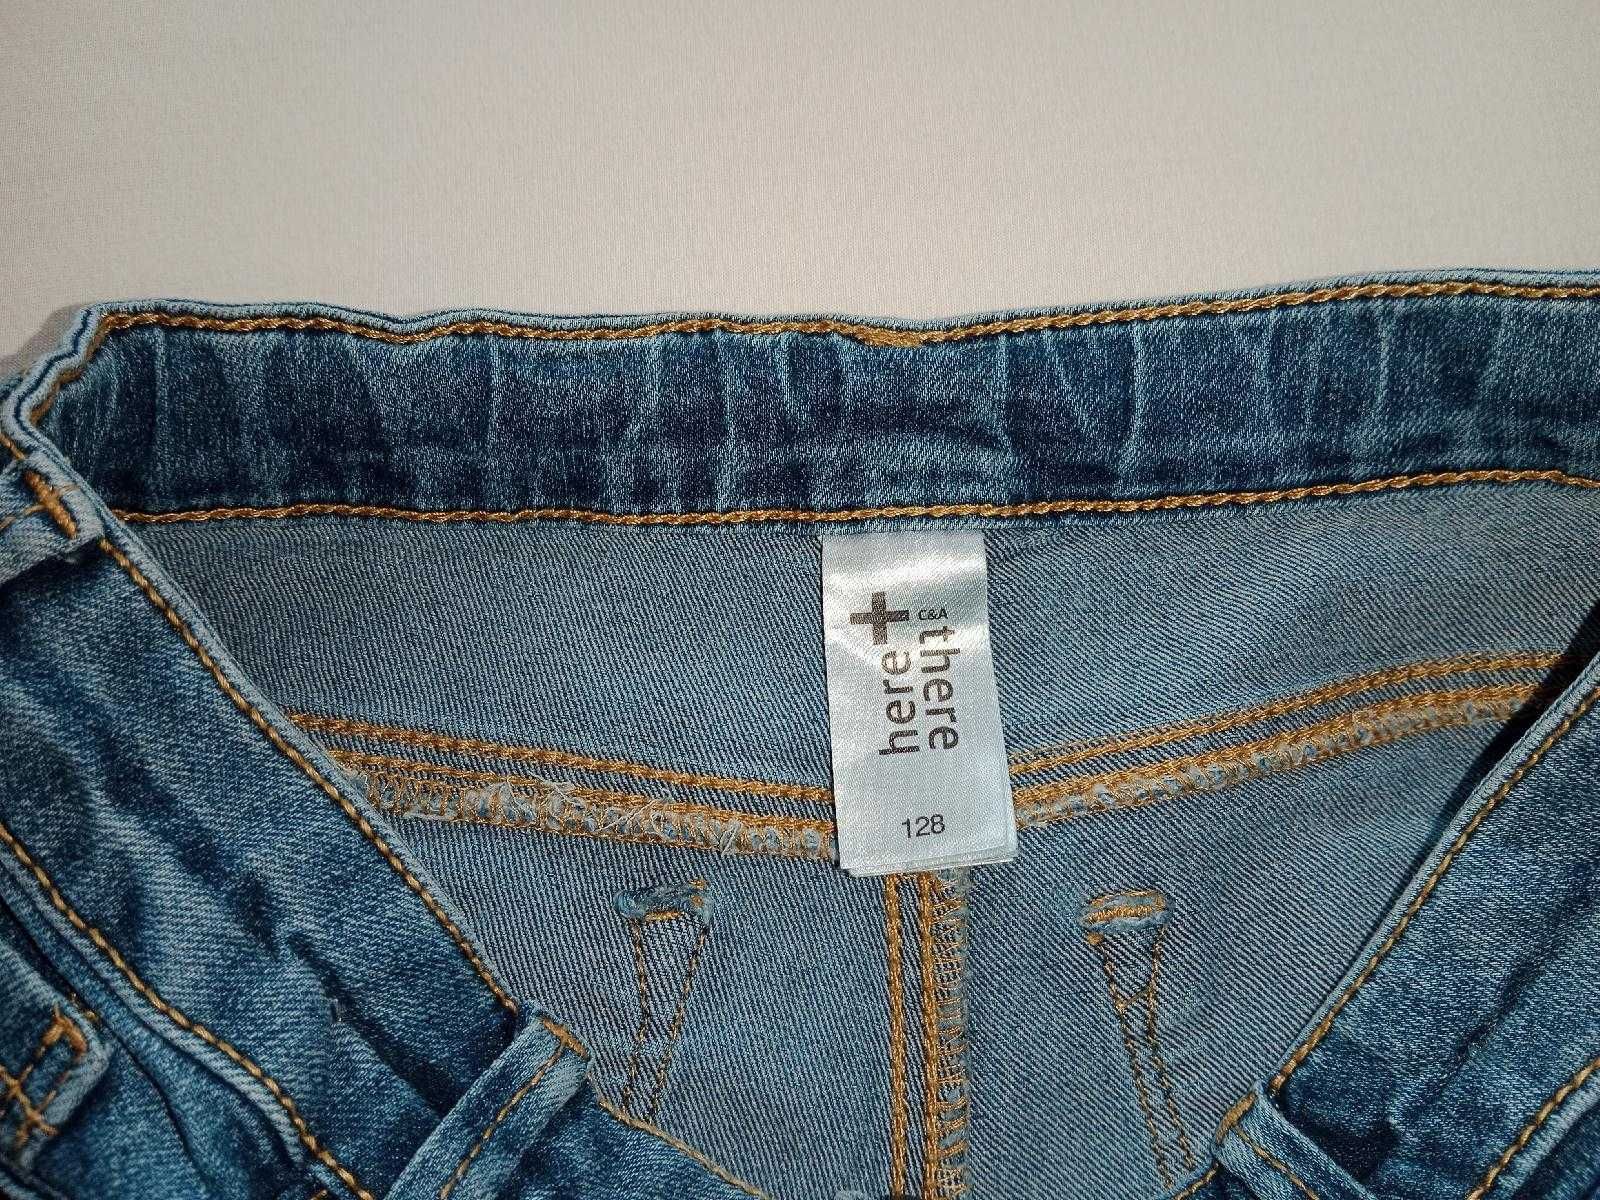 Spodnie jeansowe dżinsowe super stan elastyczne rozmiar 128 tanio